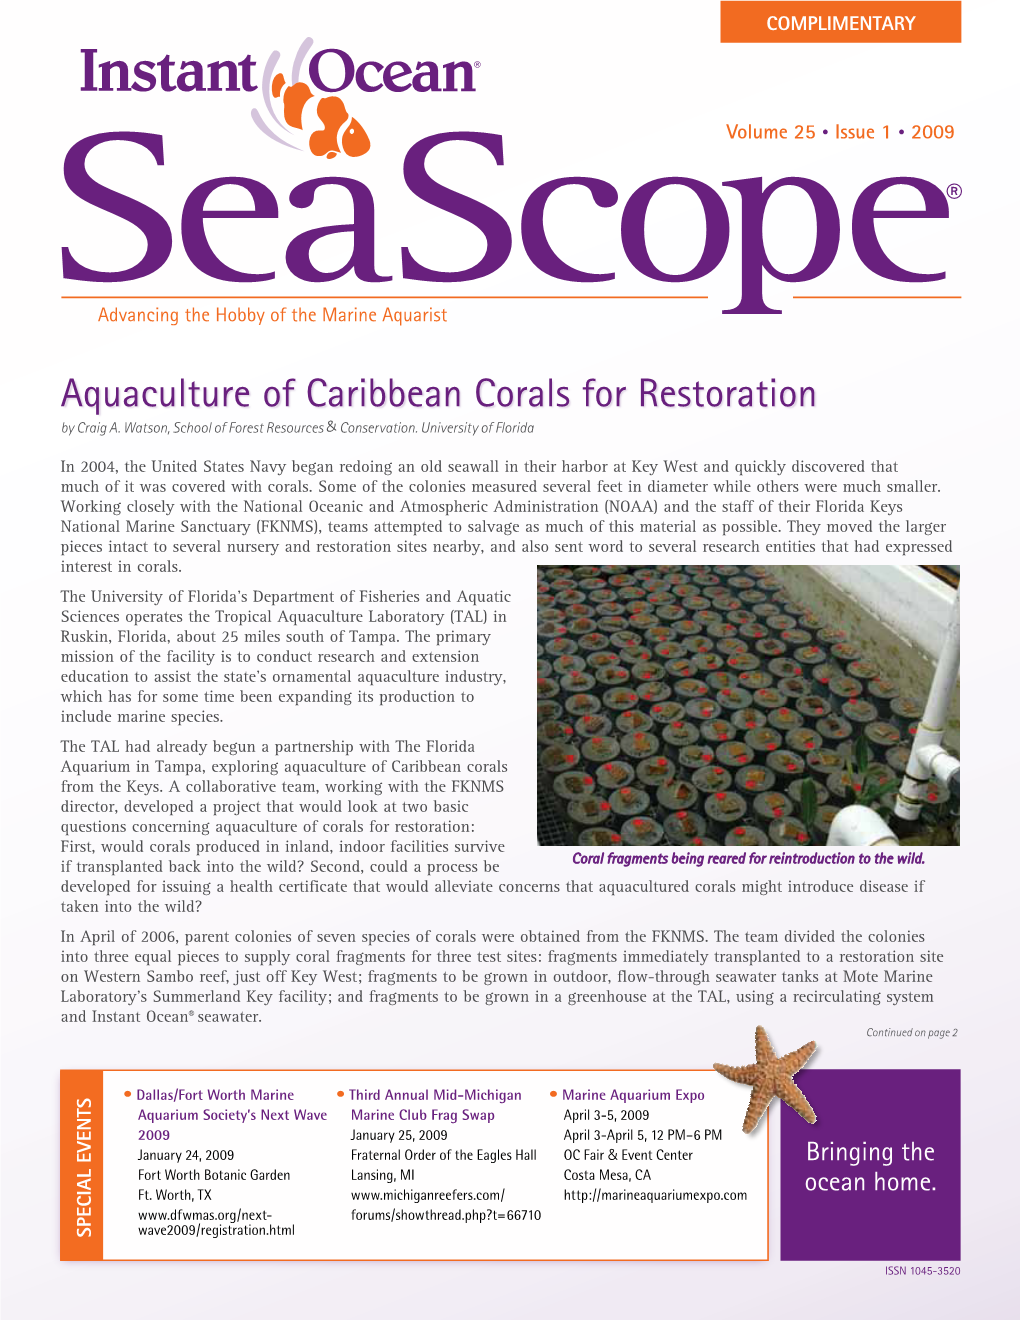 Aquaculture of Caribbean Corals for Restoration by Craig A